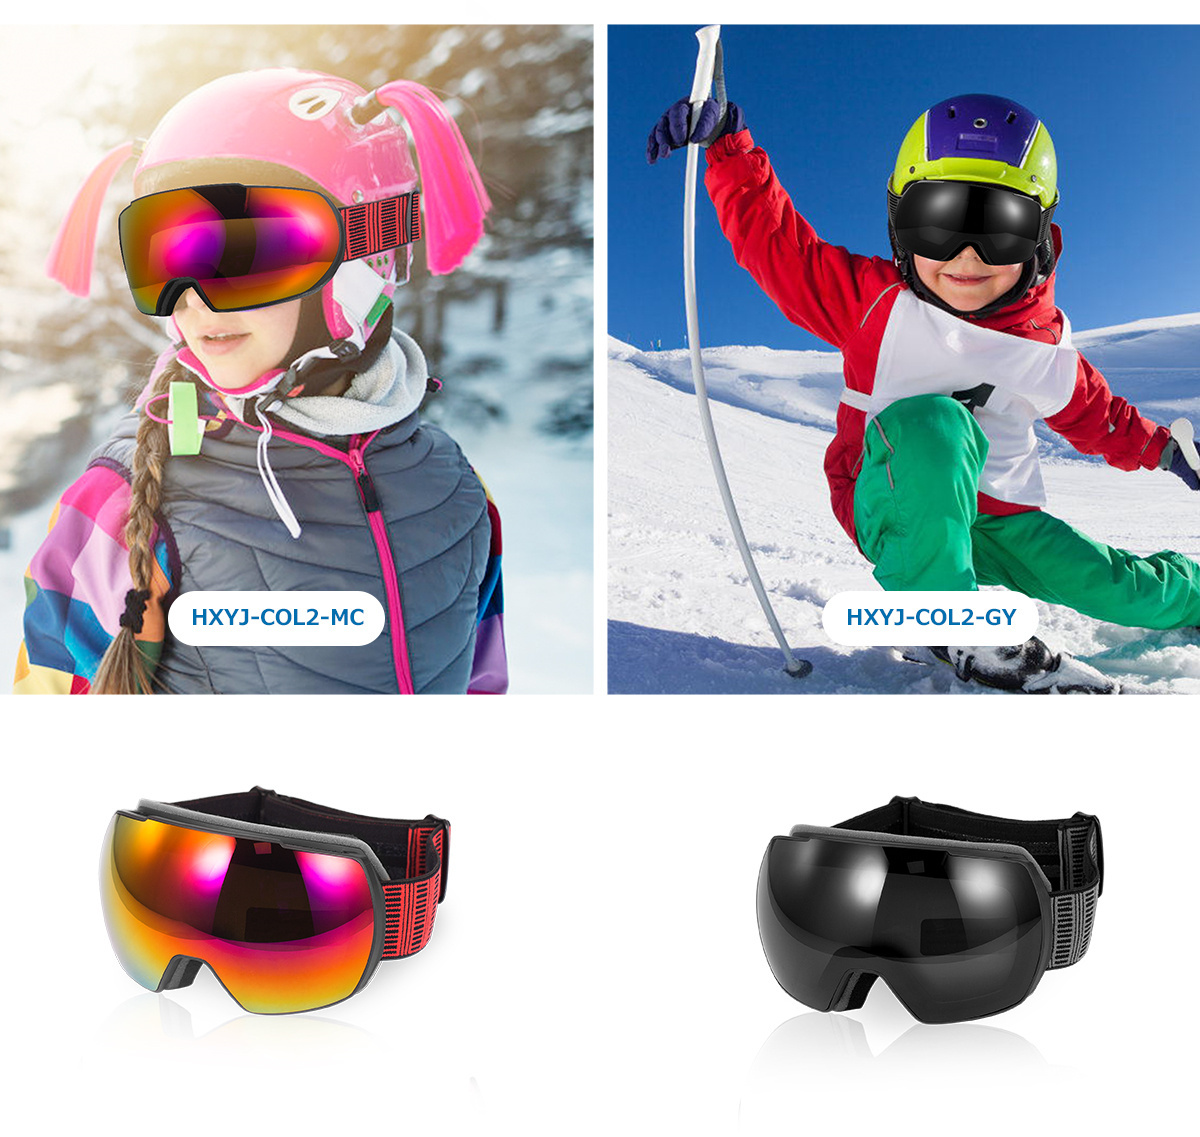 ウベックス スキースノーボードゴーグル ユニセックス 偏光調光 メガネ使用可 アジアンフィット downhill 2100 VPX ブラック